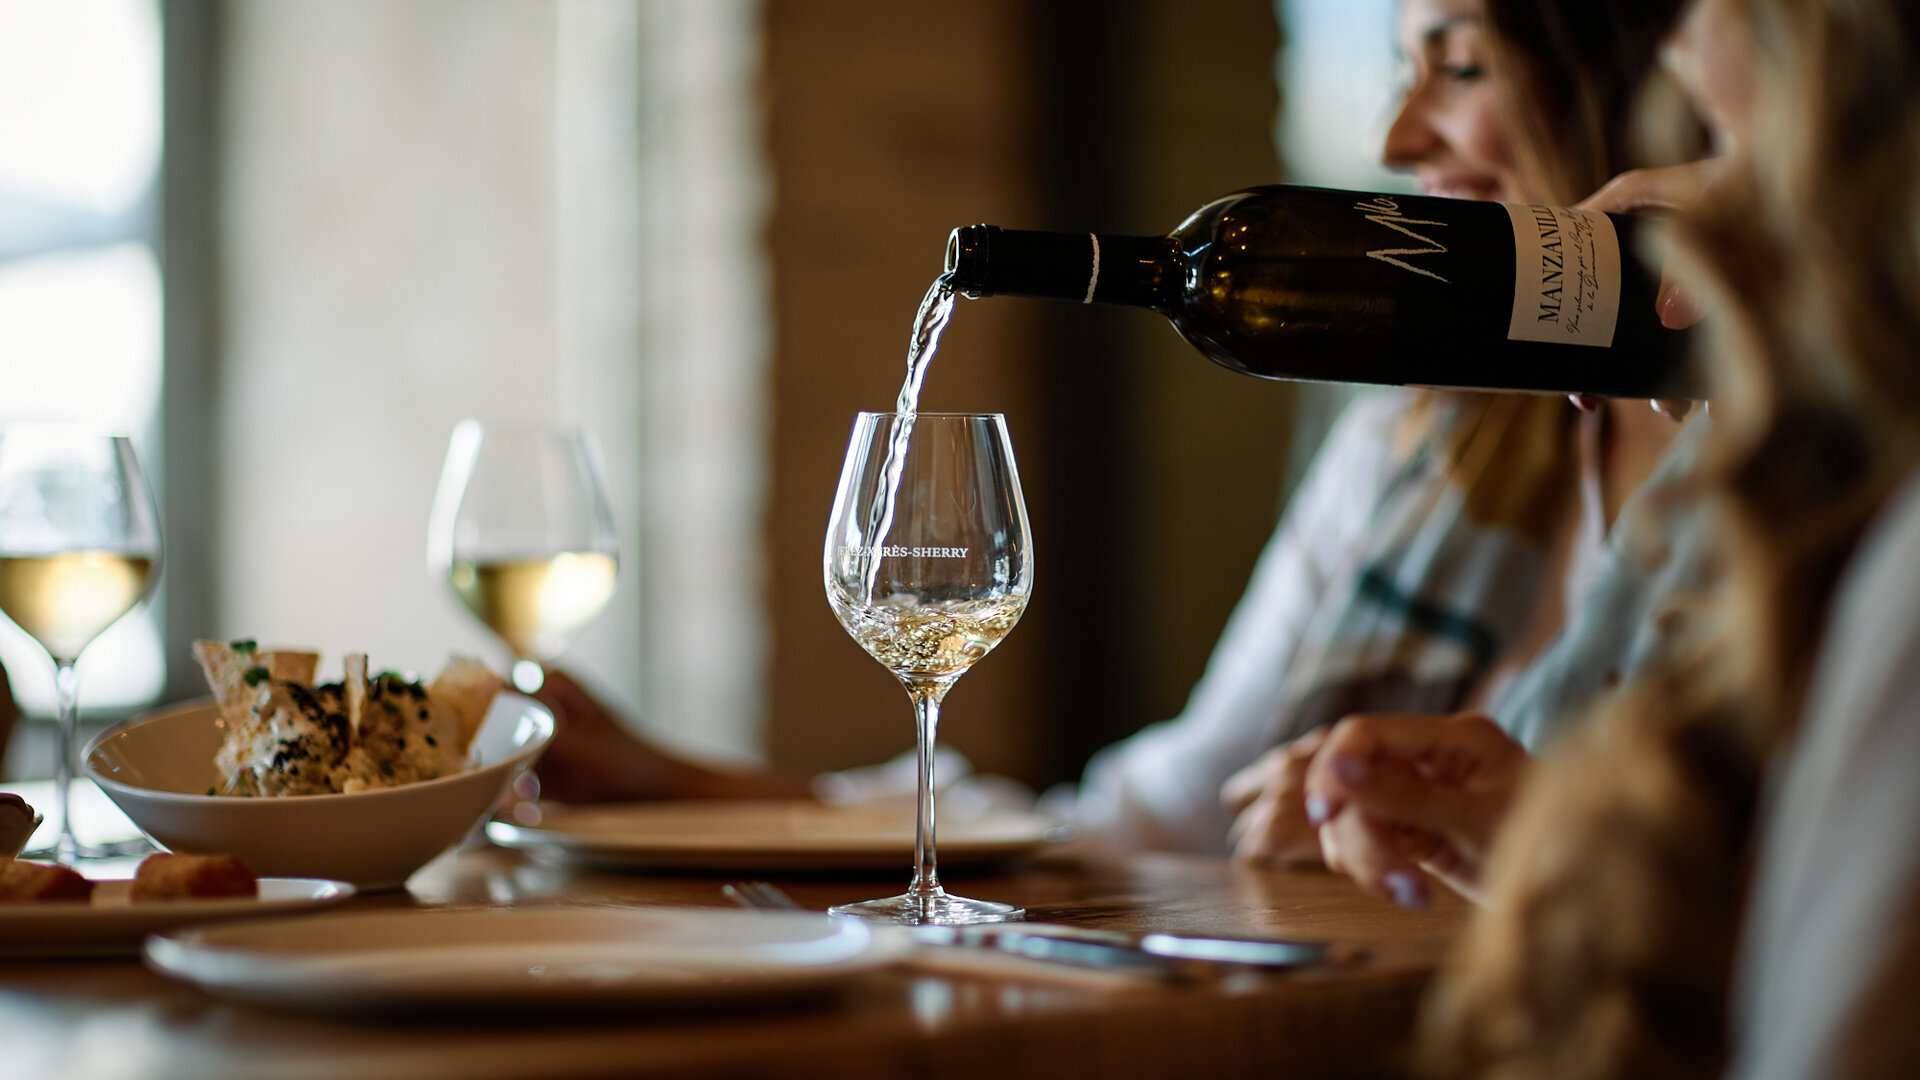 6 de cada 10 han probado por lo menos tres variedades de Vinos del Marco de Jerez; Pedro Jiménez, Manzanilla y fino.